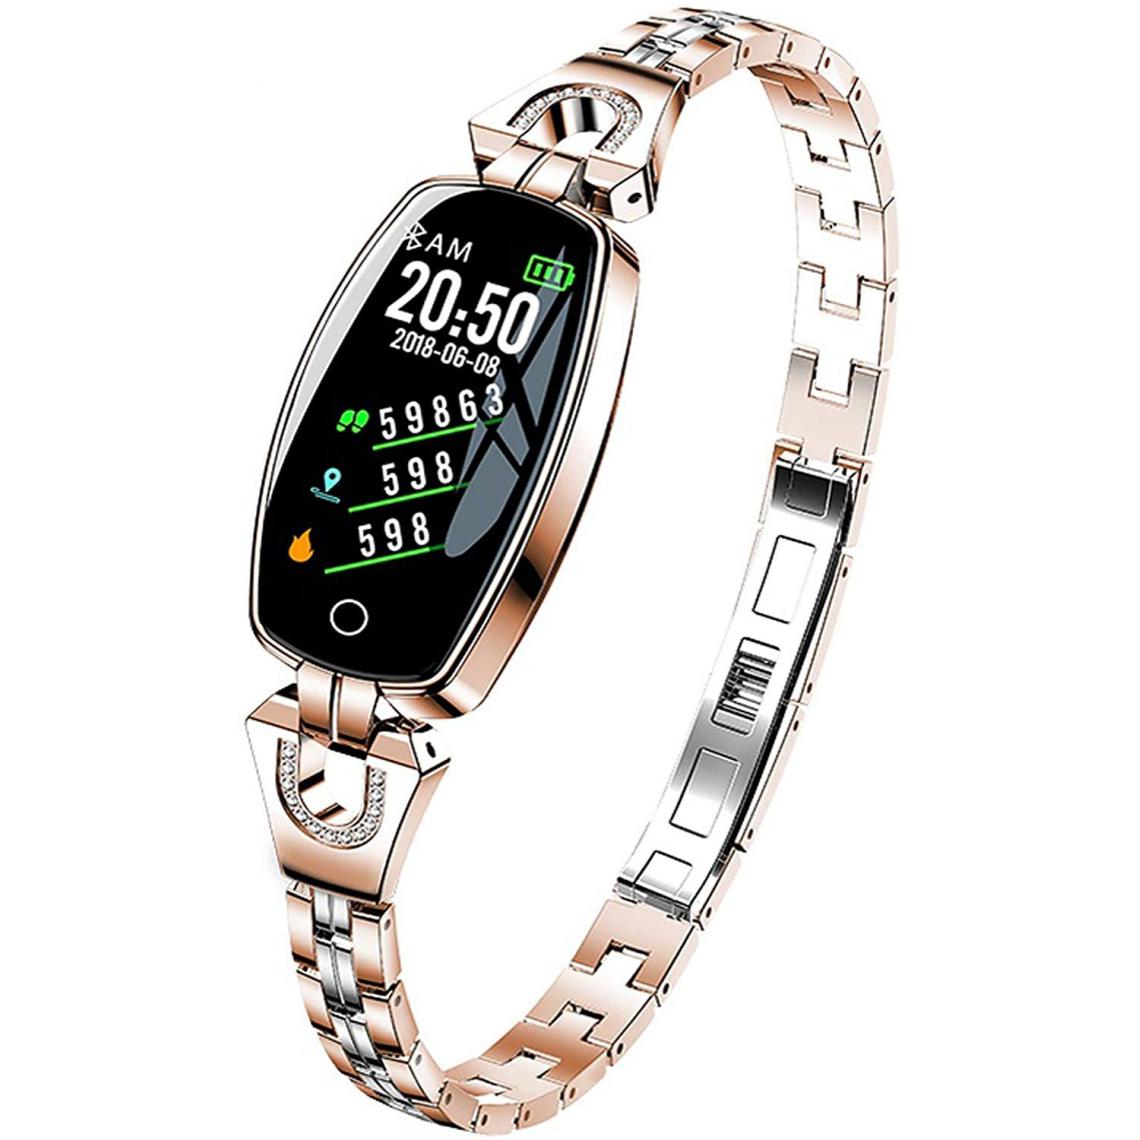 Chrono - Montre intelligente pour femme - Bracelet en acier inoxydable - Moniteur de fréquence cardiaque - Compteur de calories - Suivi du sommeil - Avec mesure de la pression artérielle - Bijou élégantï¼orï¼ - Montre connectée